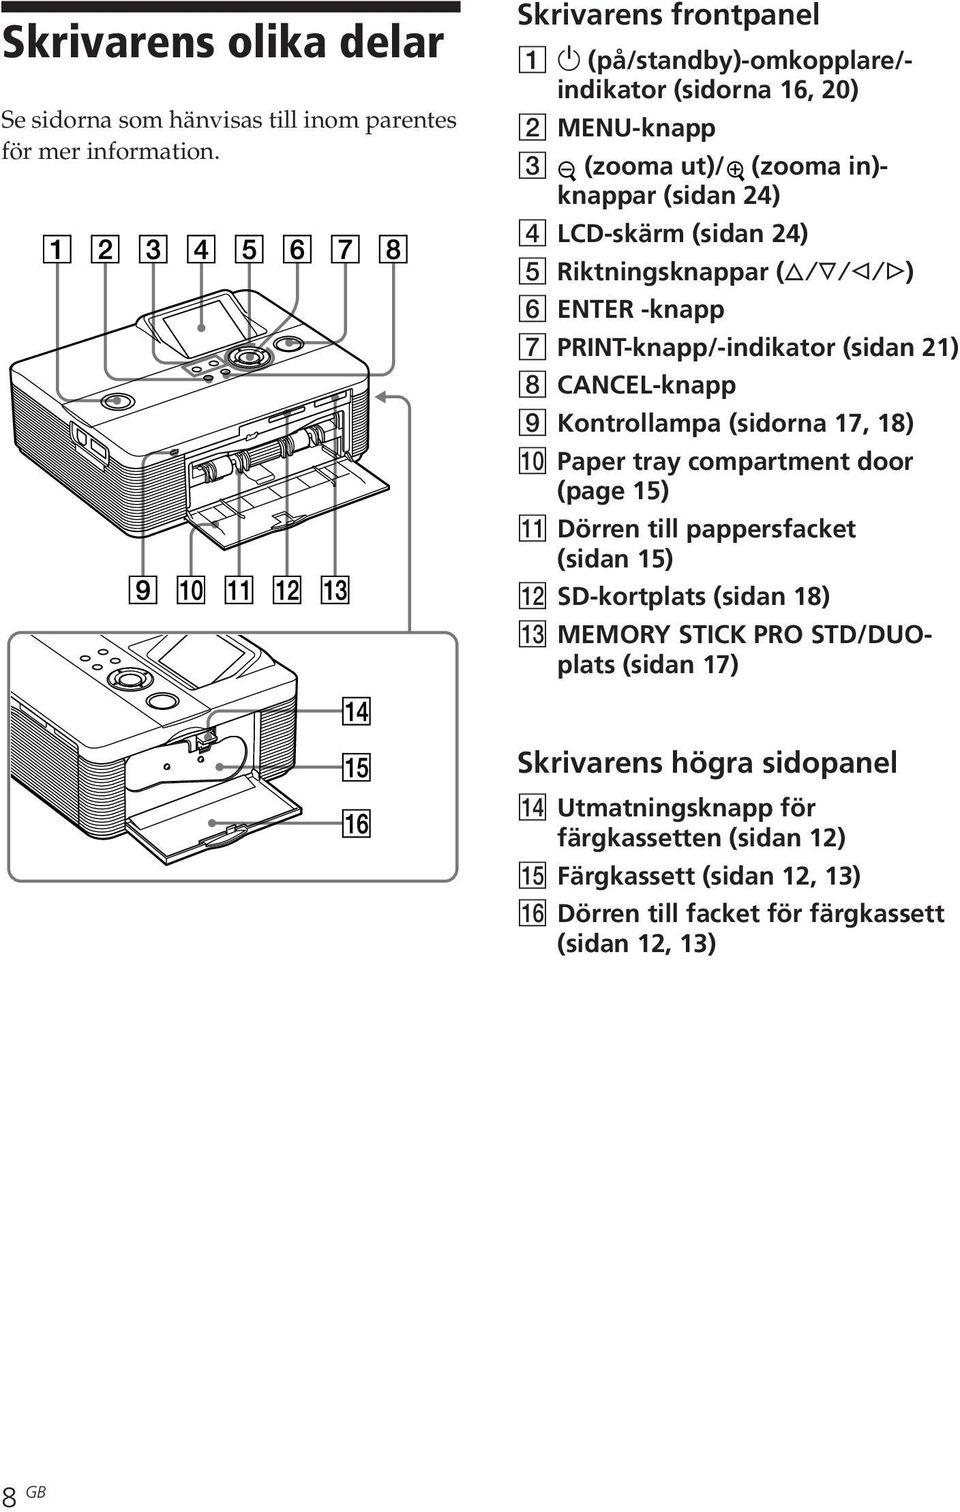 Riktningsknappar (f/f/g/g) 6 ENTER -knapp 7 PRINT-knapp/-indikator (sidan 21) 8 CANCEL-knapp 9 Kontrollampa (sidorna 17, 18) 0 Paper tray compartment door (page 15) qa